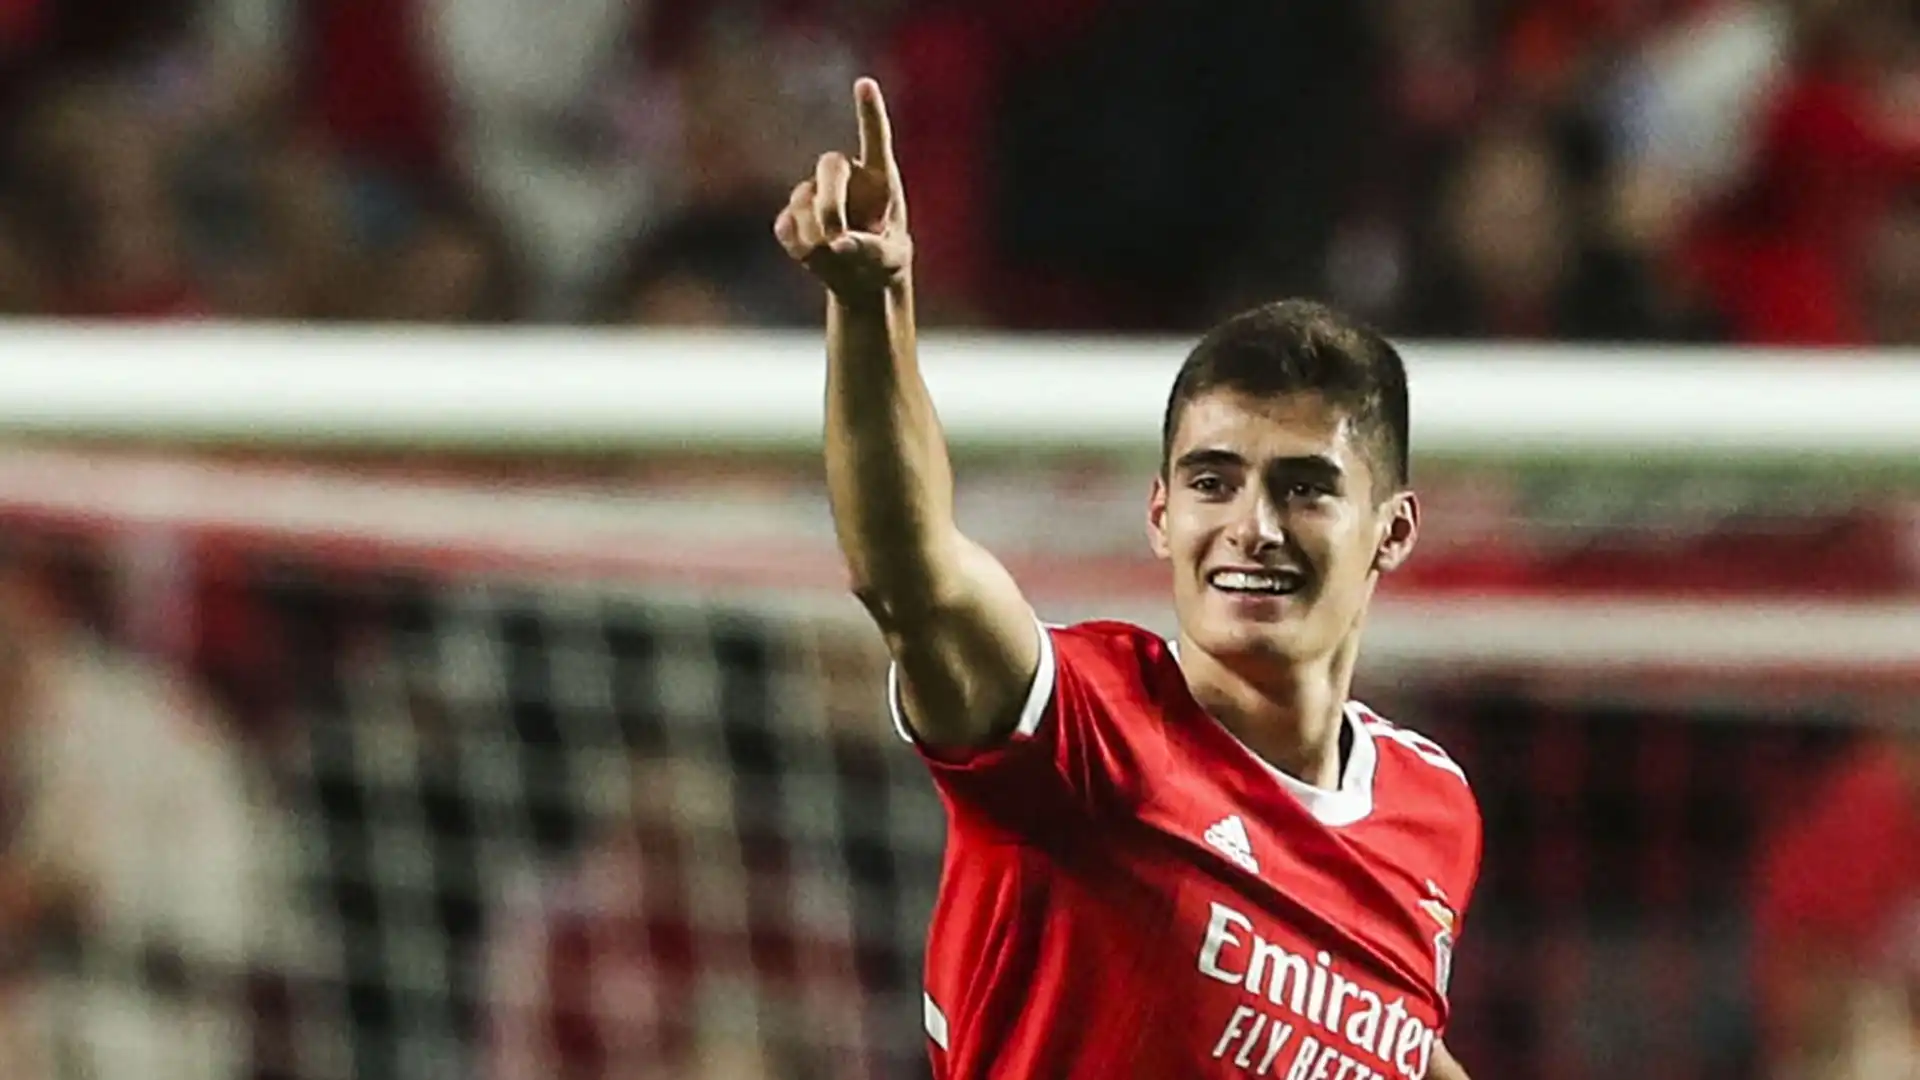 Nonostante la giovane età, Antonio Silva è già titolare fisso nel Benfica